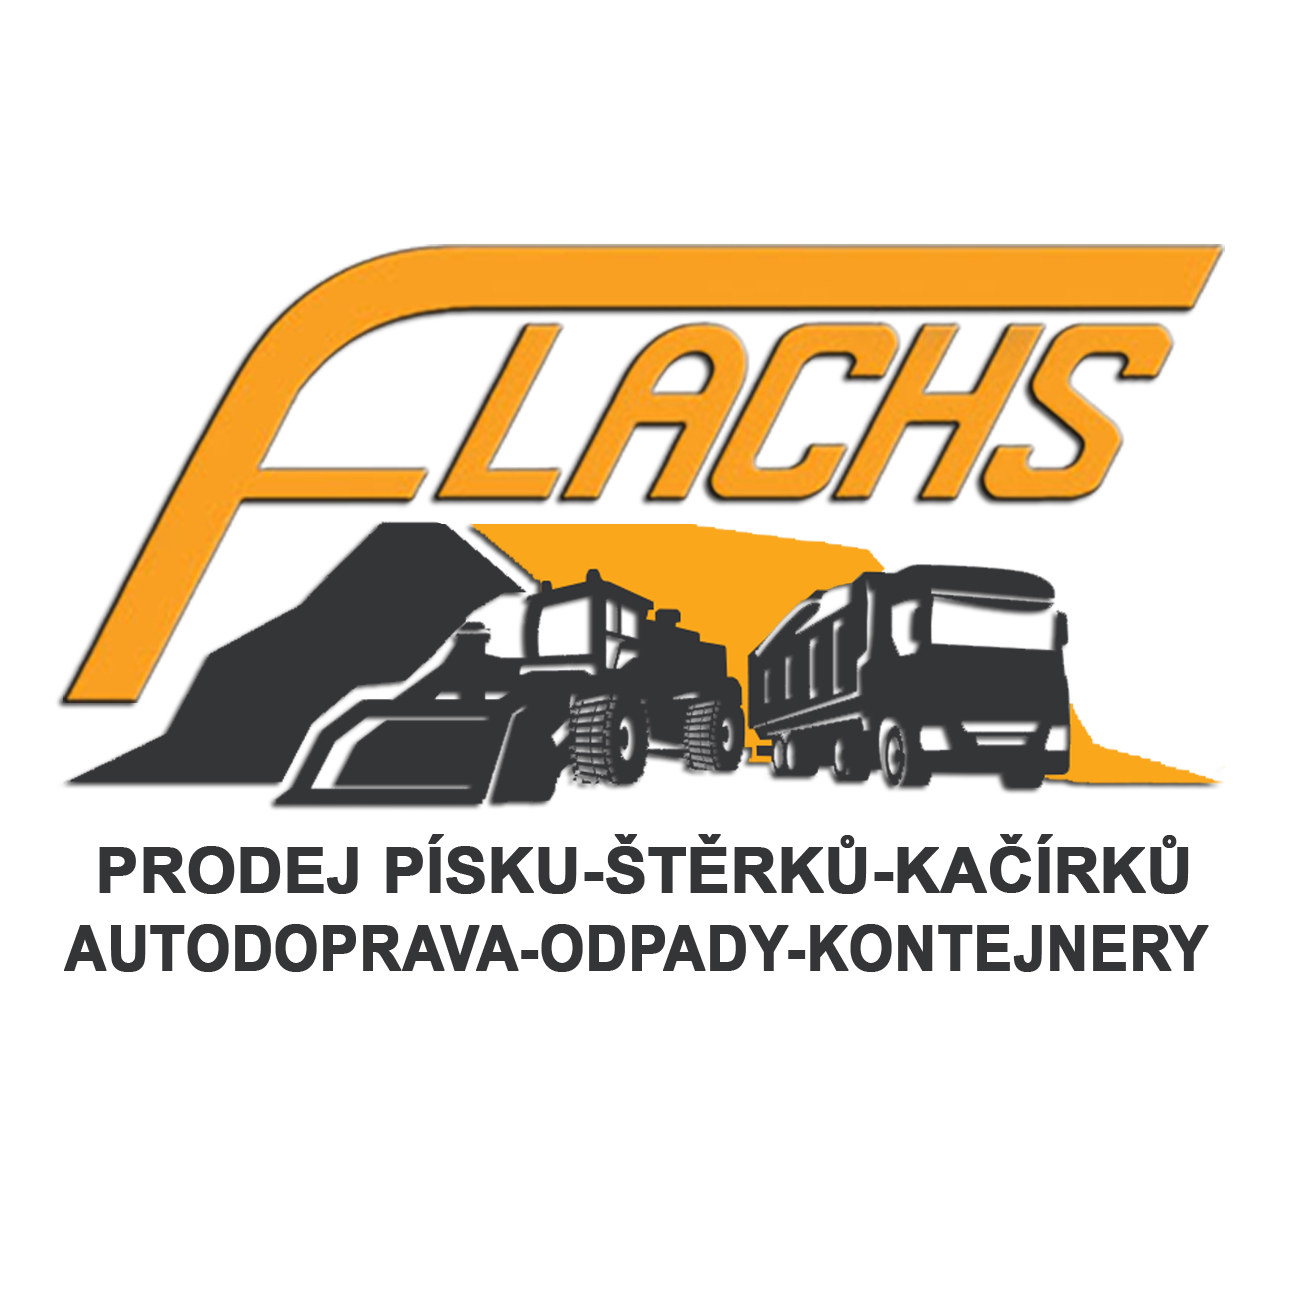 Flachs logo1